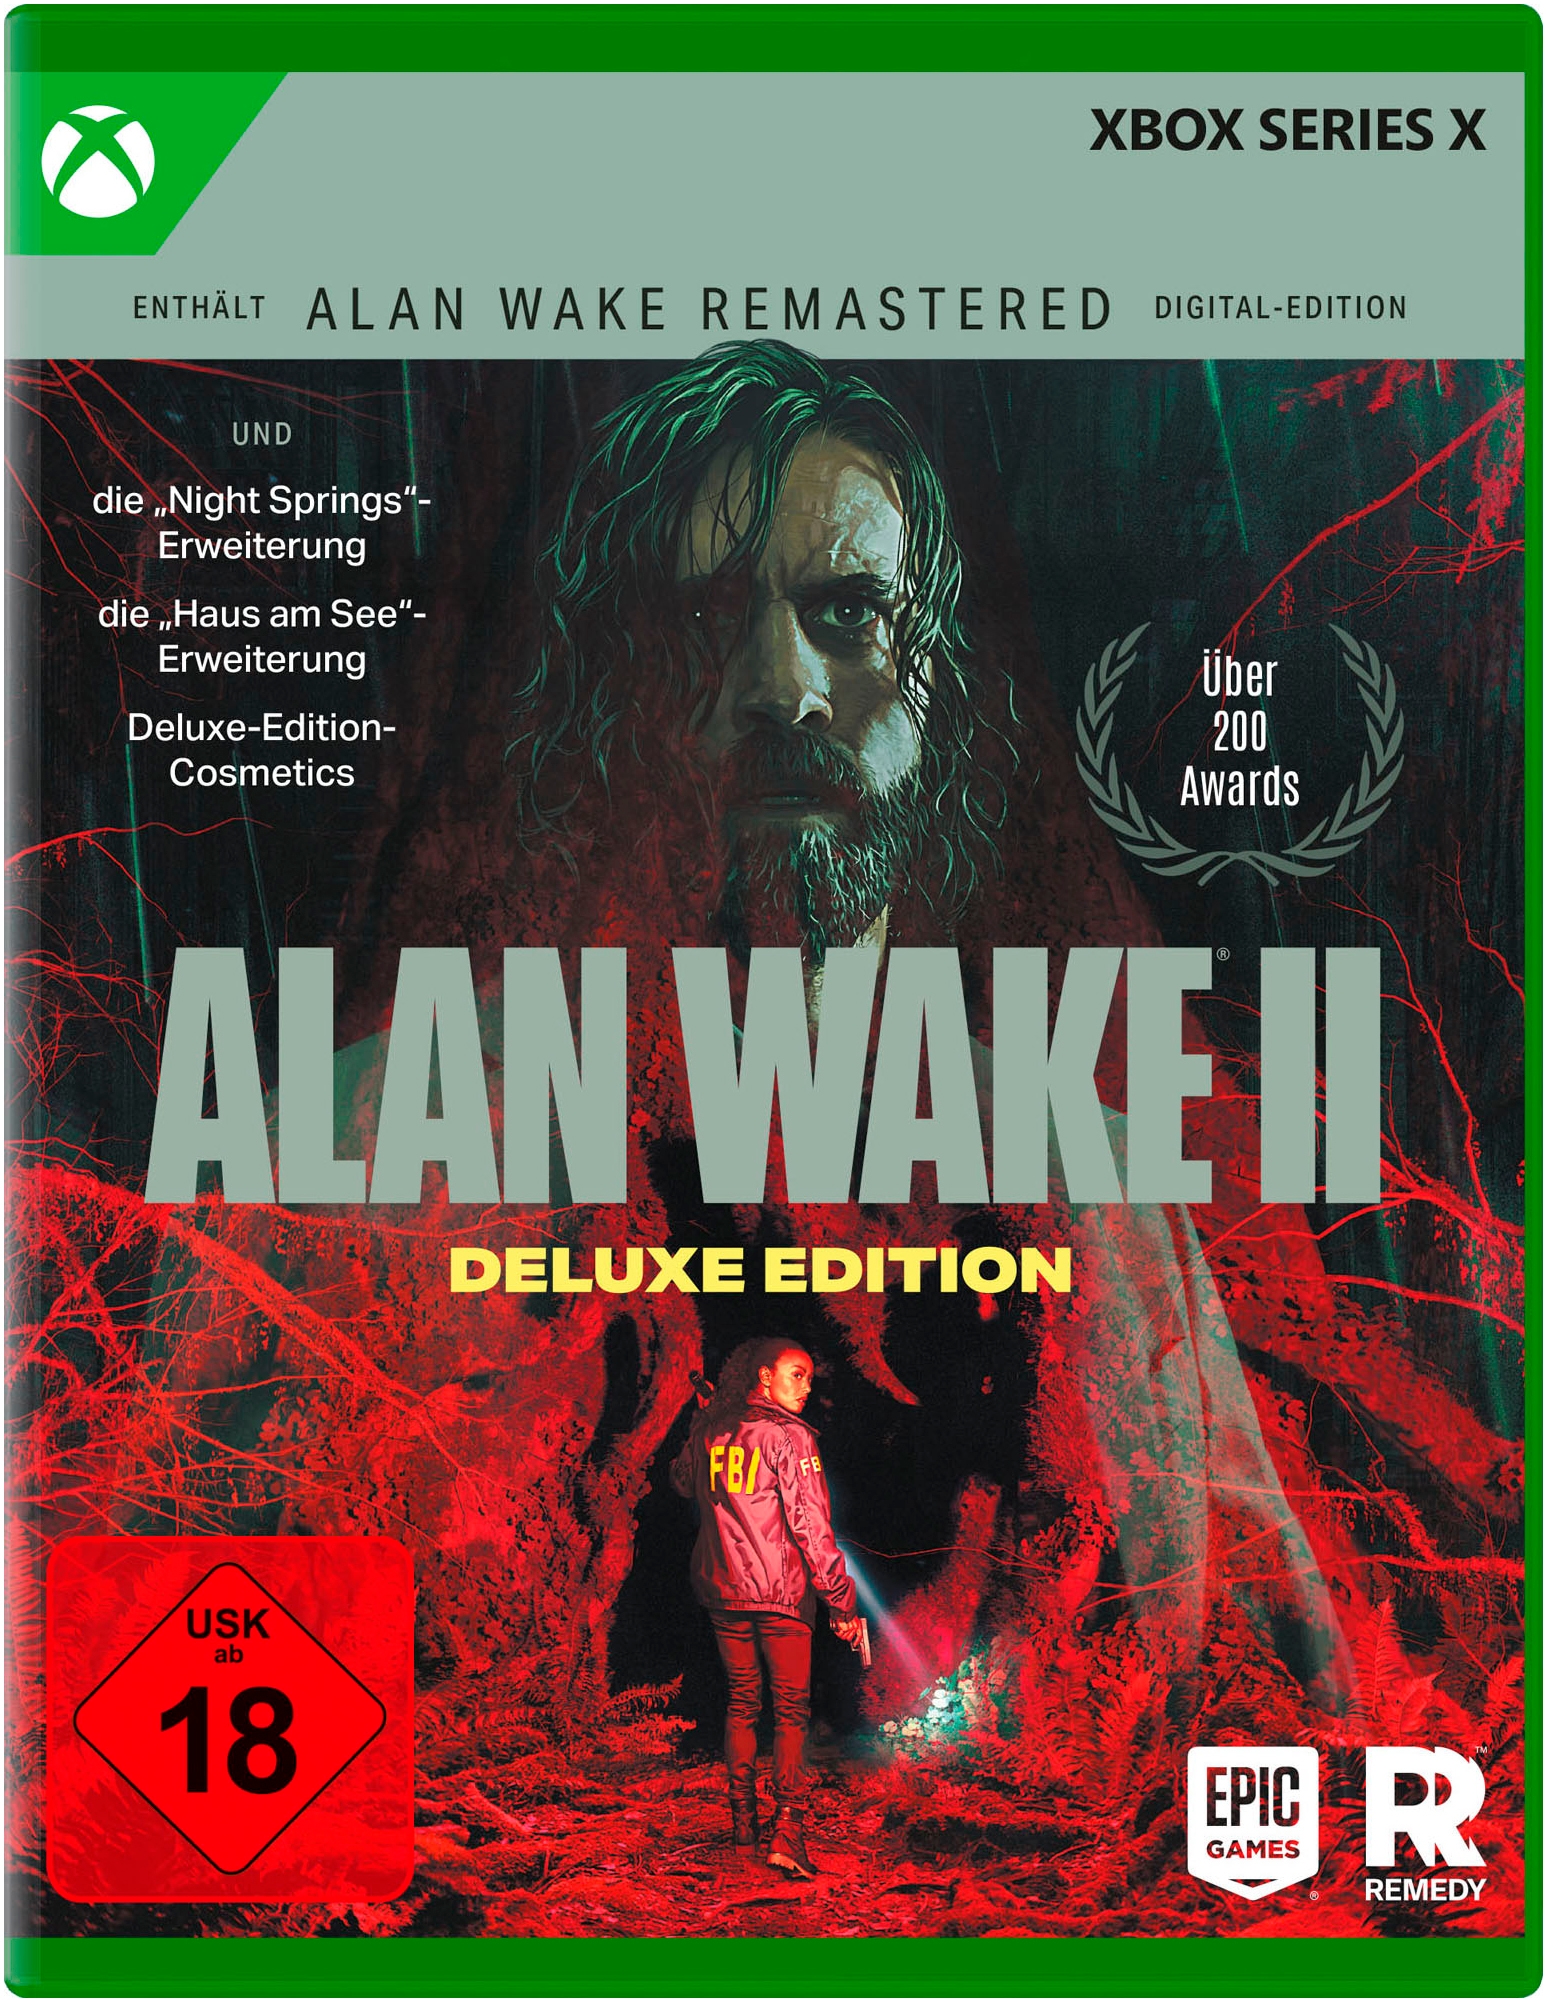 nicht definiert Spielesoftware »Alan Wake 2 Deluxe Edition«, Xbox Series X